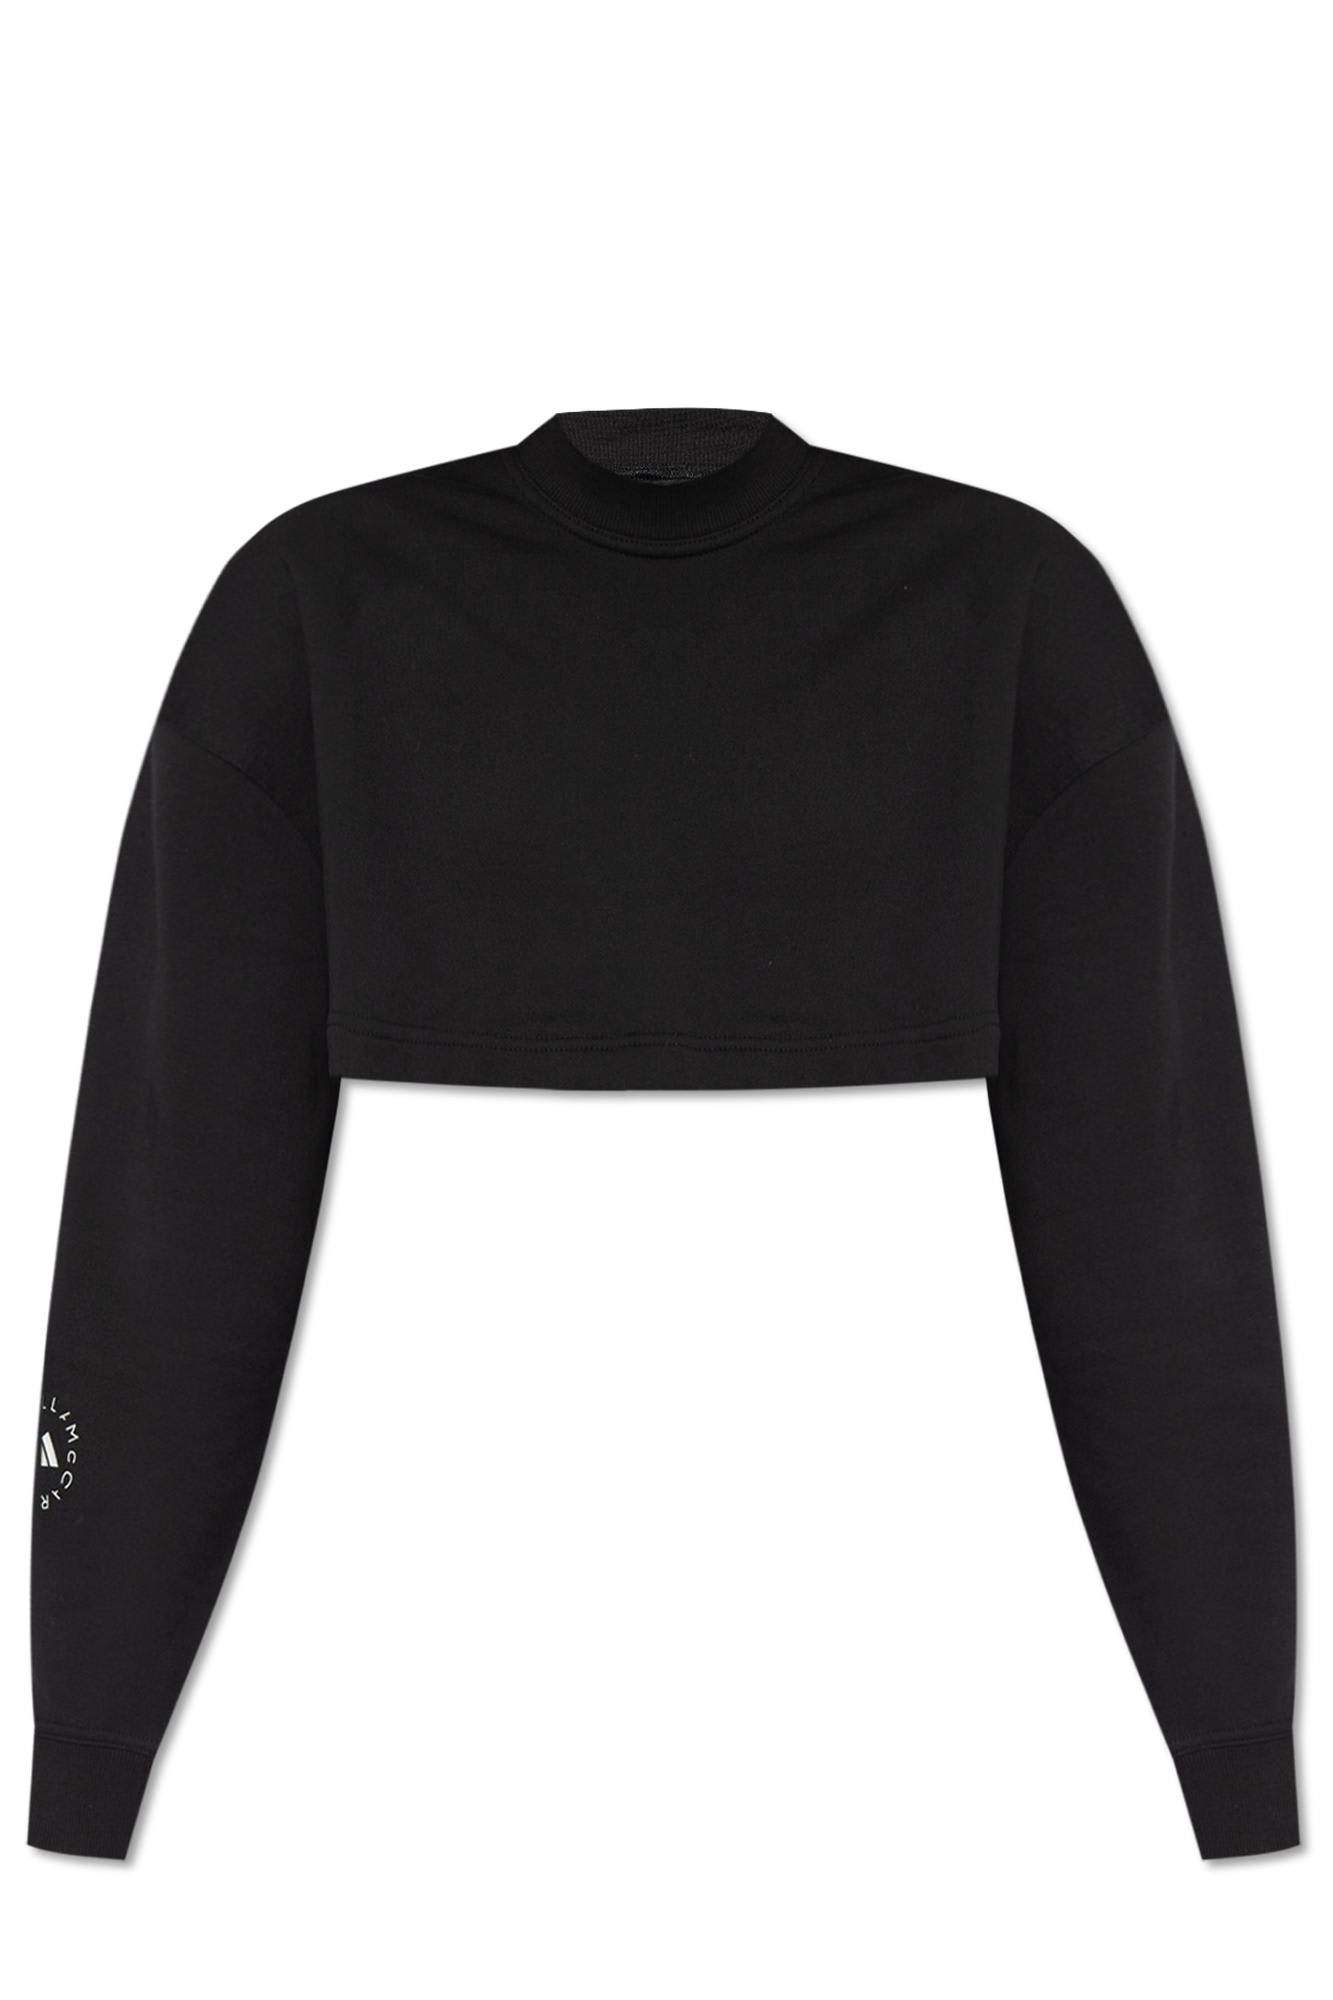 Shop Adidas By Stella Mccartney Cropped Sweatshirt With Logo